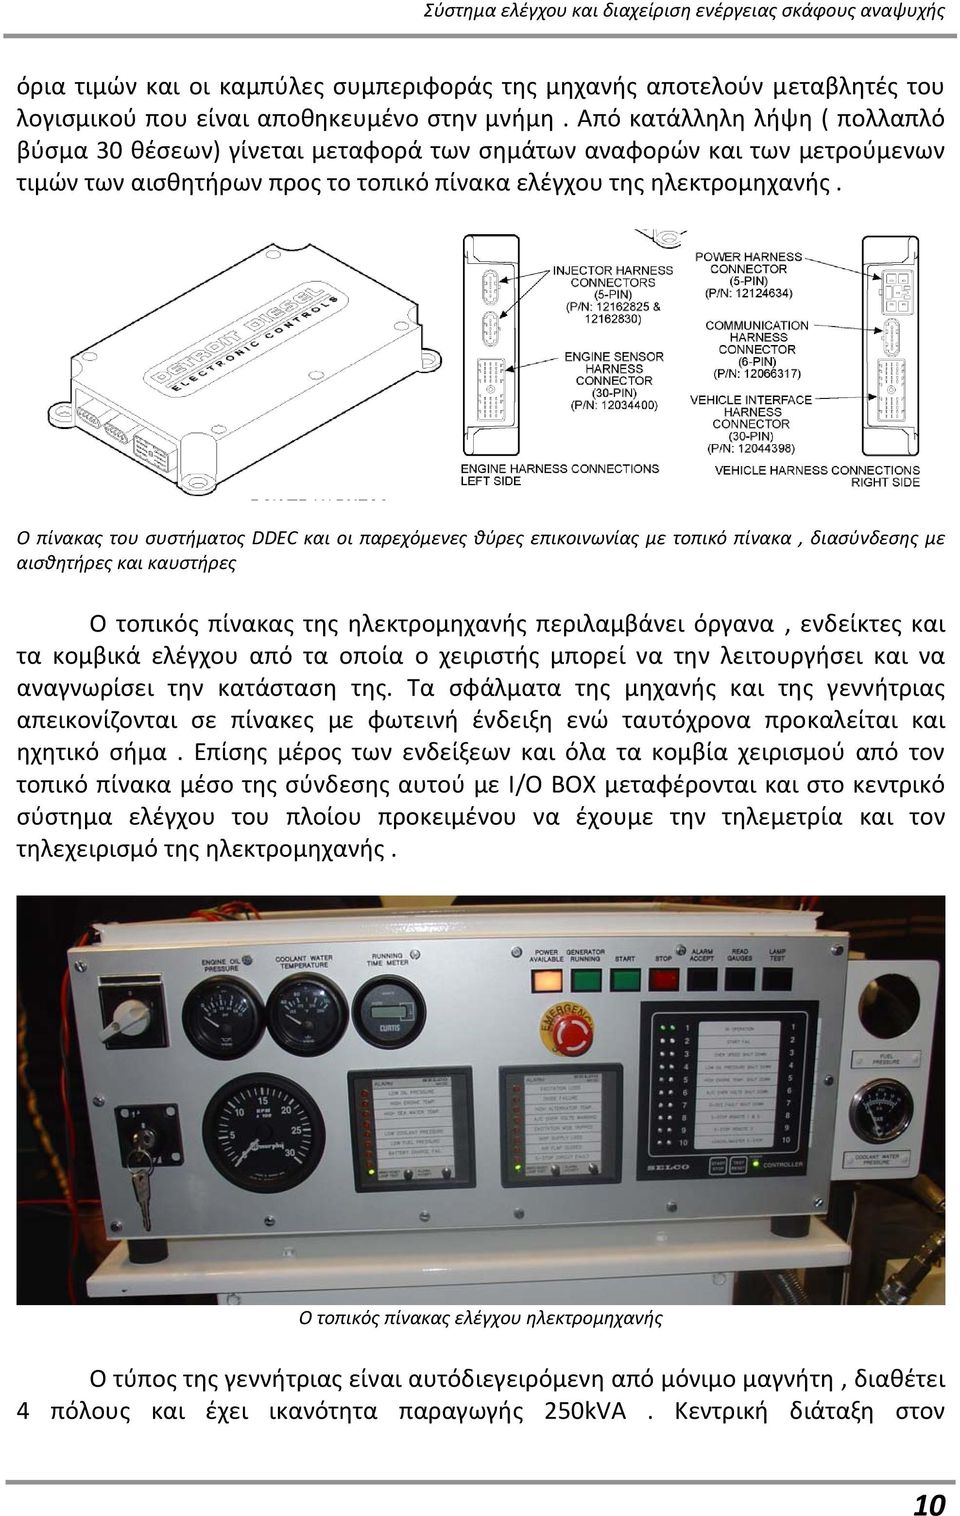 Ο πίνακας του συστήματος DDEC και οι παρεχόμενες θύρες επικοινωνίας με τοπικό πίνακα, διασύνδεσης με αισθητήρες και καυστήρες Ο τοπικός πίνακας της ηλεκτρομηχανής περιλαμβάνει όργανα, ενδείκτες και